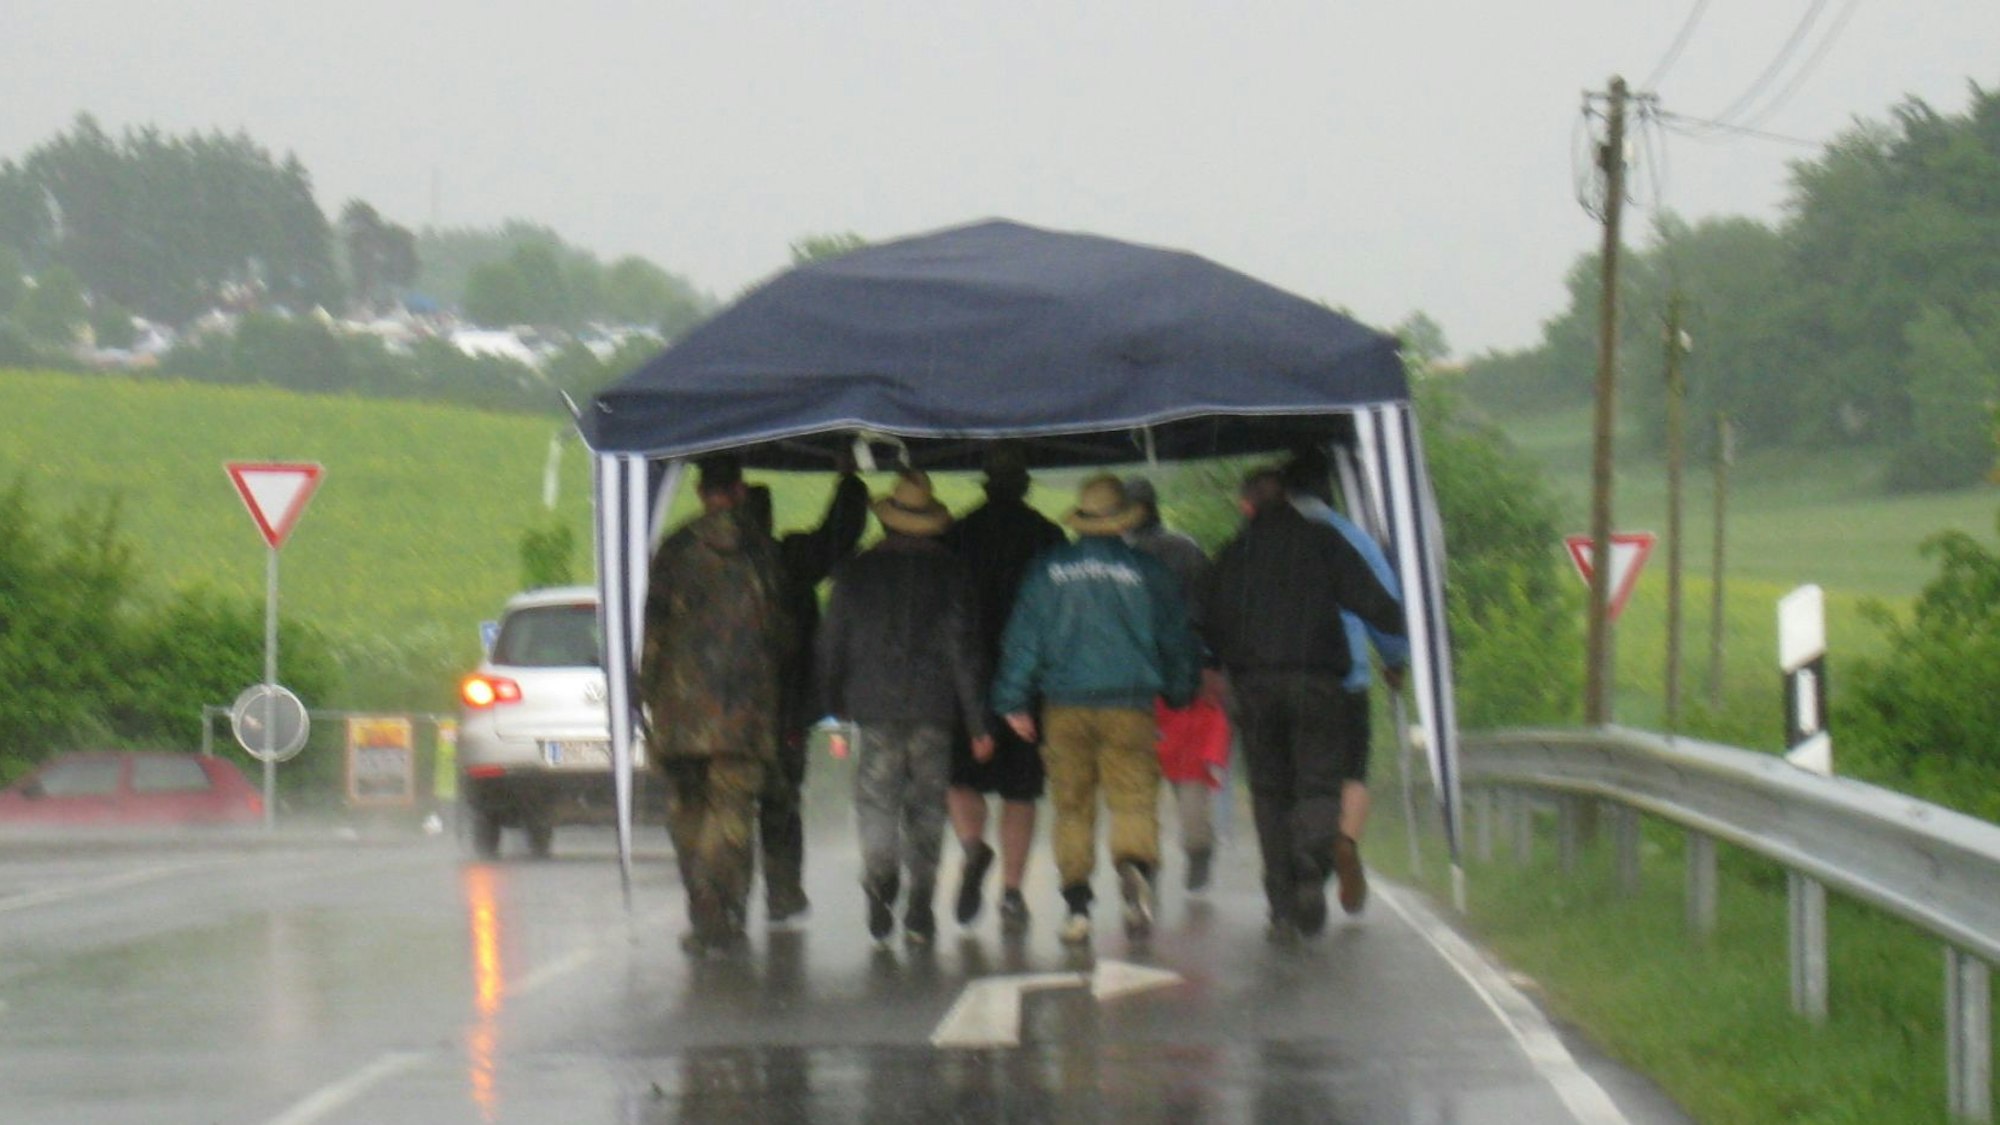 Man sieht eine Männergruppe unter einen Pavillon gedrängt, die durch den Regen läuft.